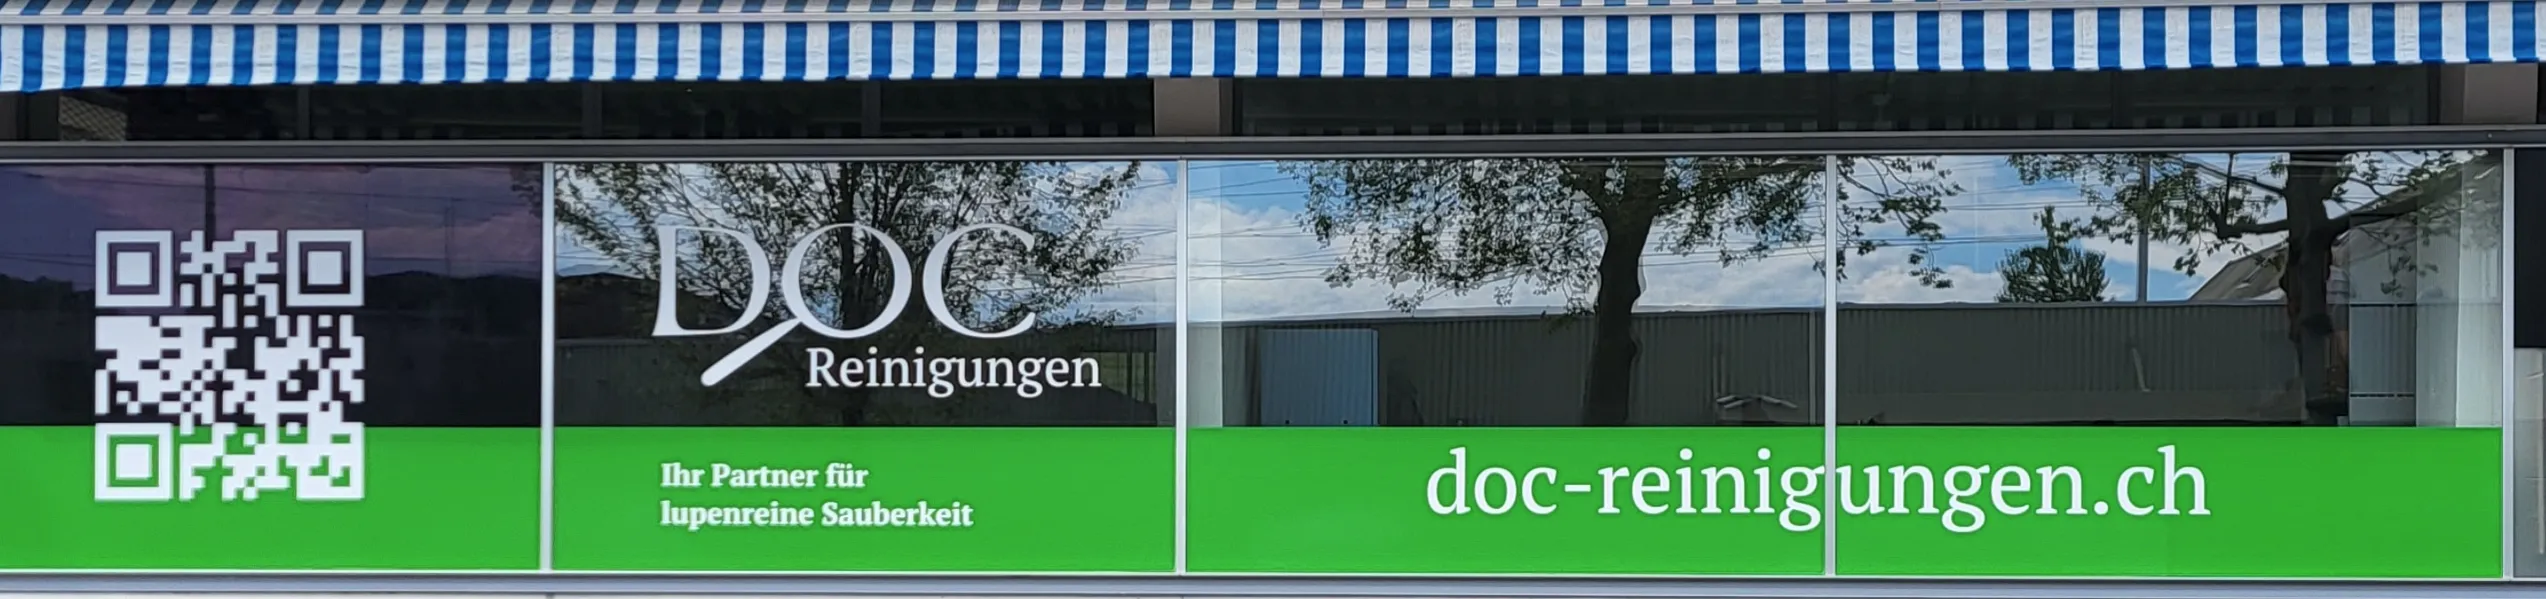 DOC Reinigungen GmbH